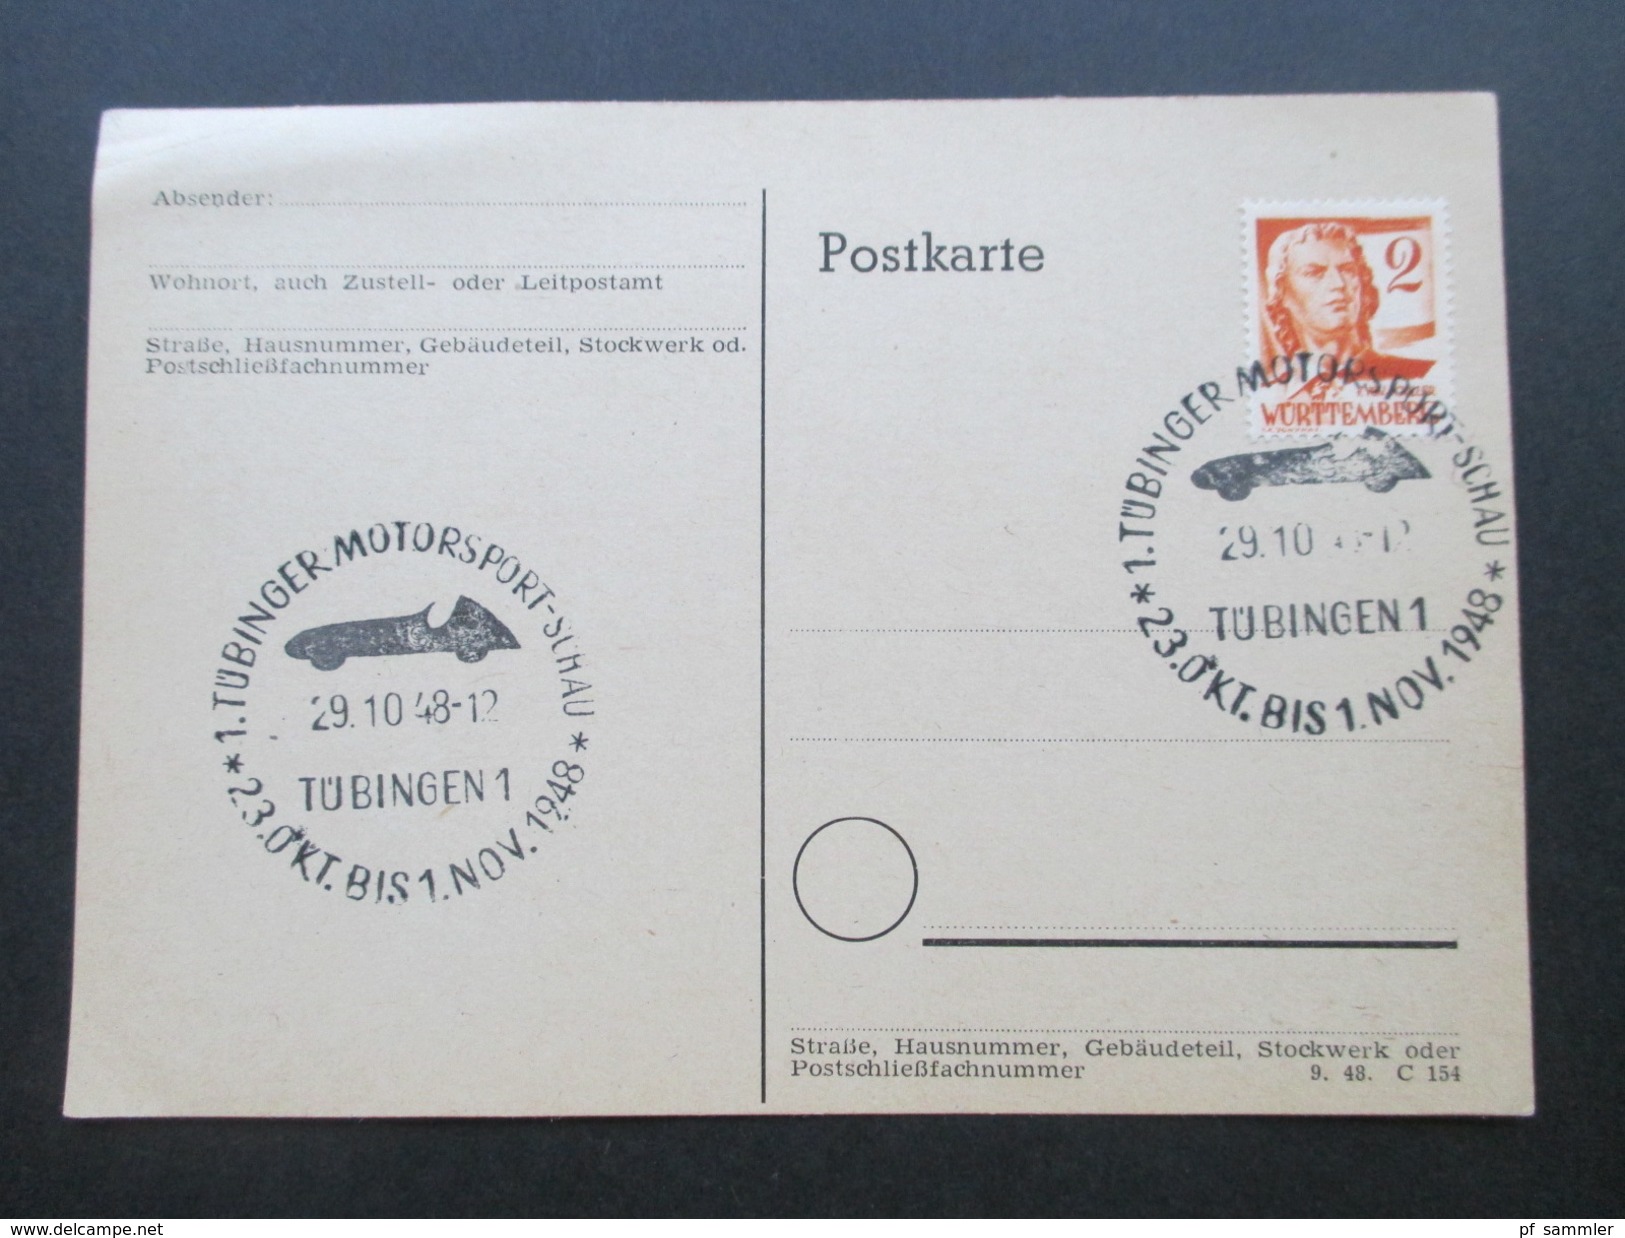 Alliierte Besetzung Französische Zone 19 Belege / Postkarten aus dem Bedarf. Senkr. Paare usw. Bahnpoststempel.